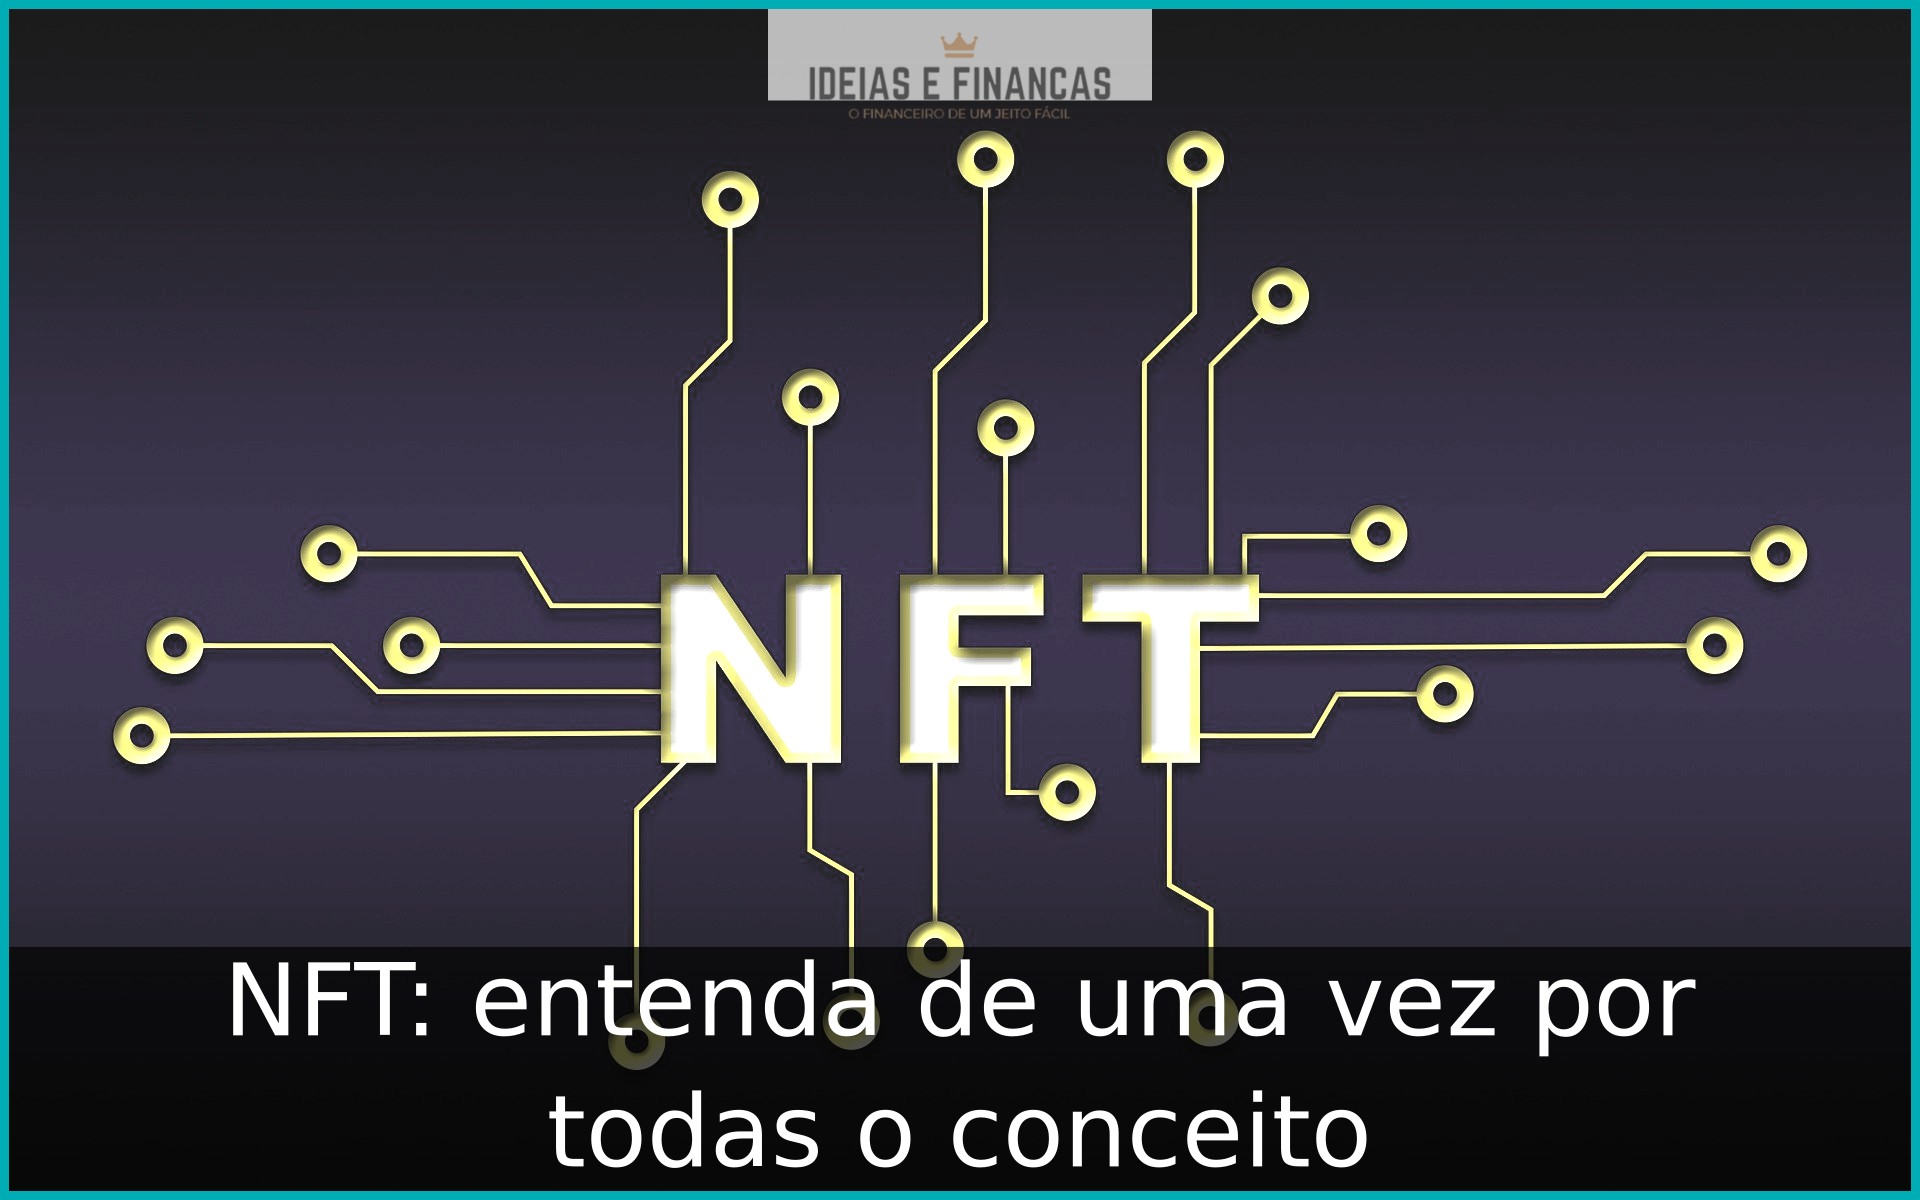 NFT: entenda de uma vez por todas o conceito